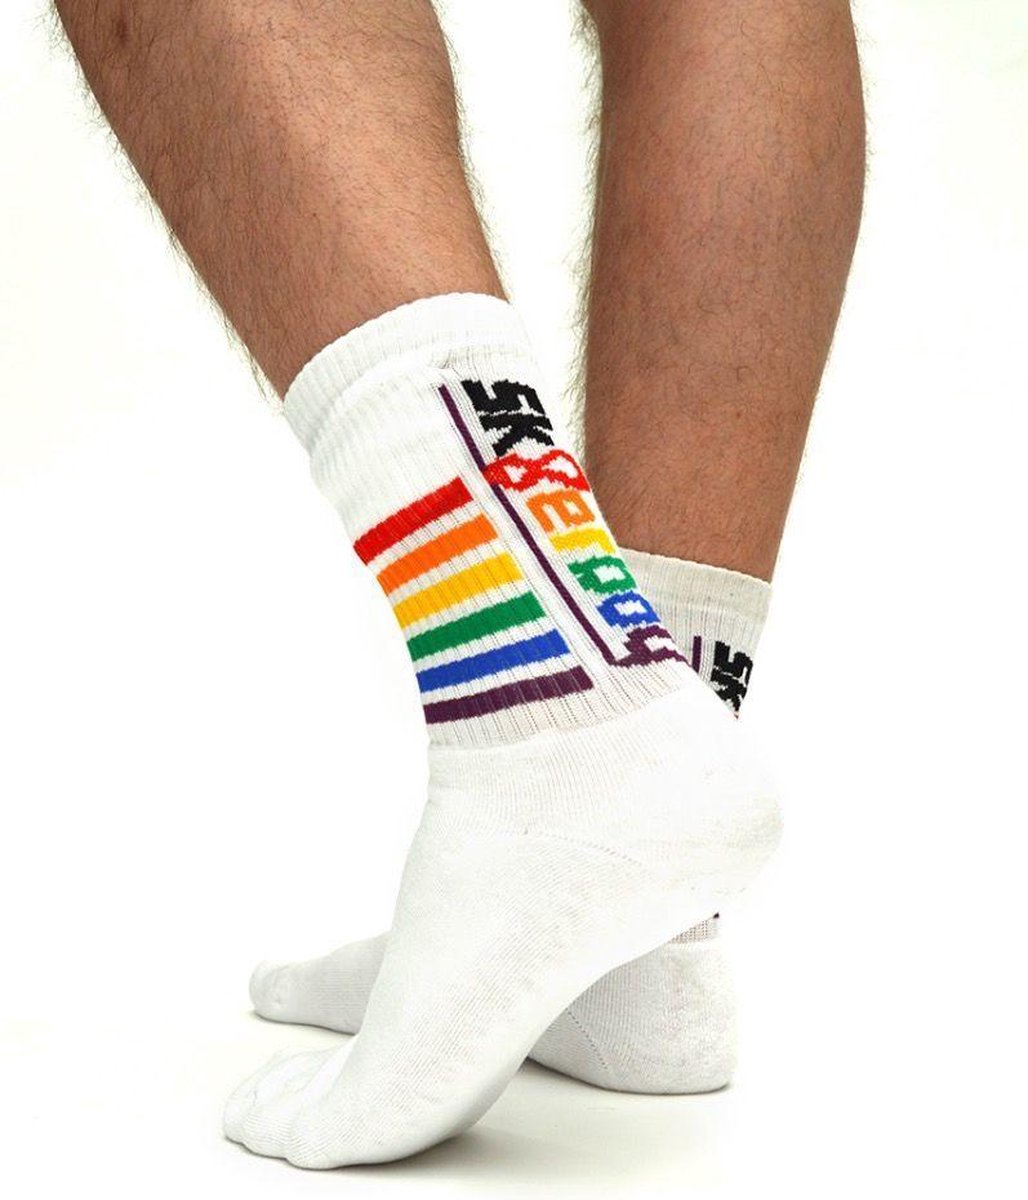 Sk8erboy Gaypride Socks 39-42